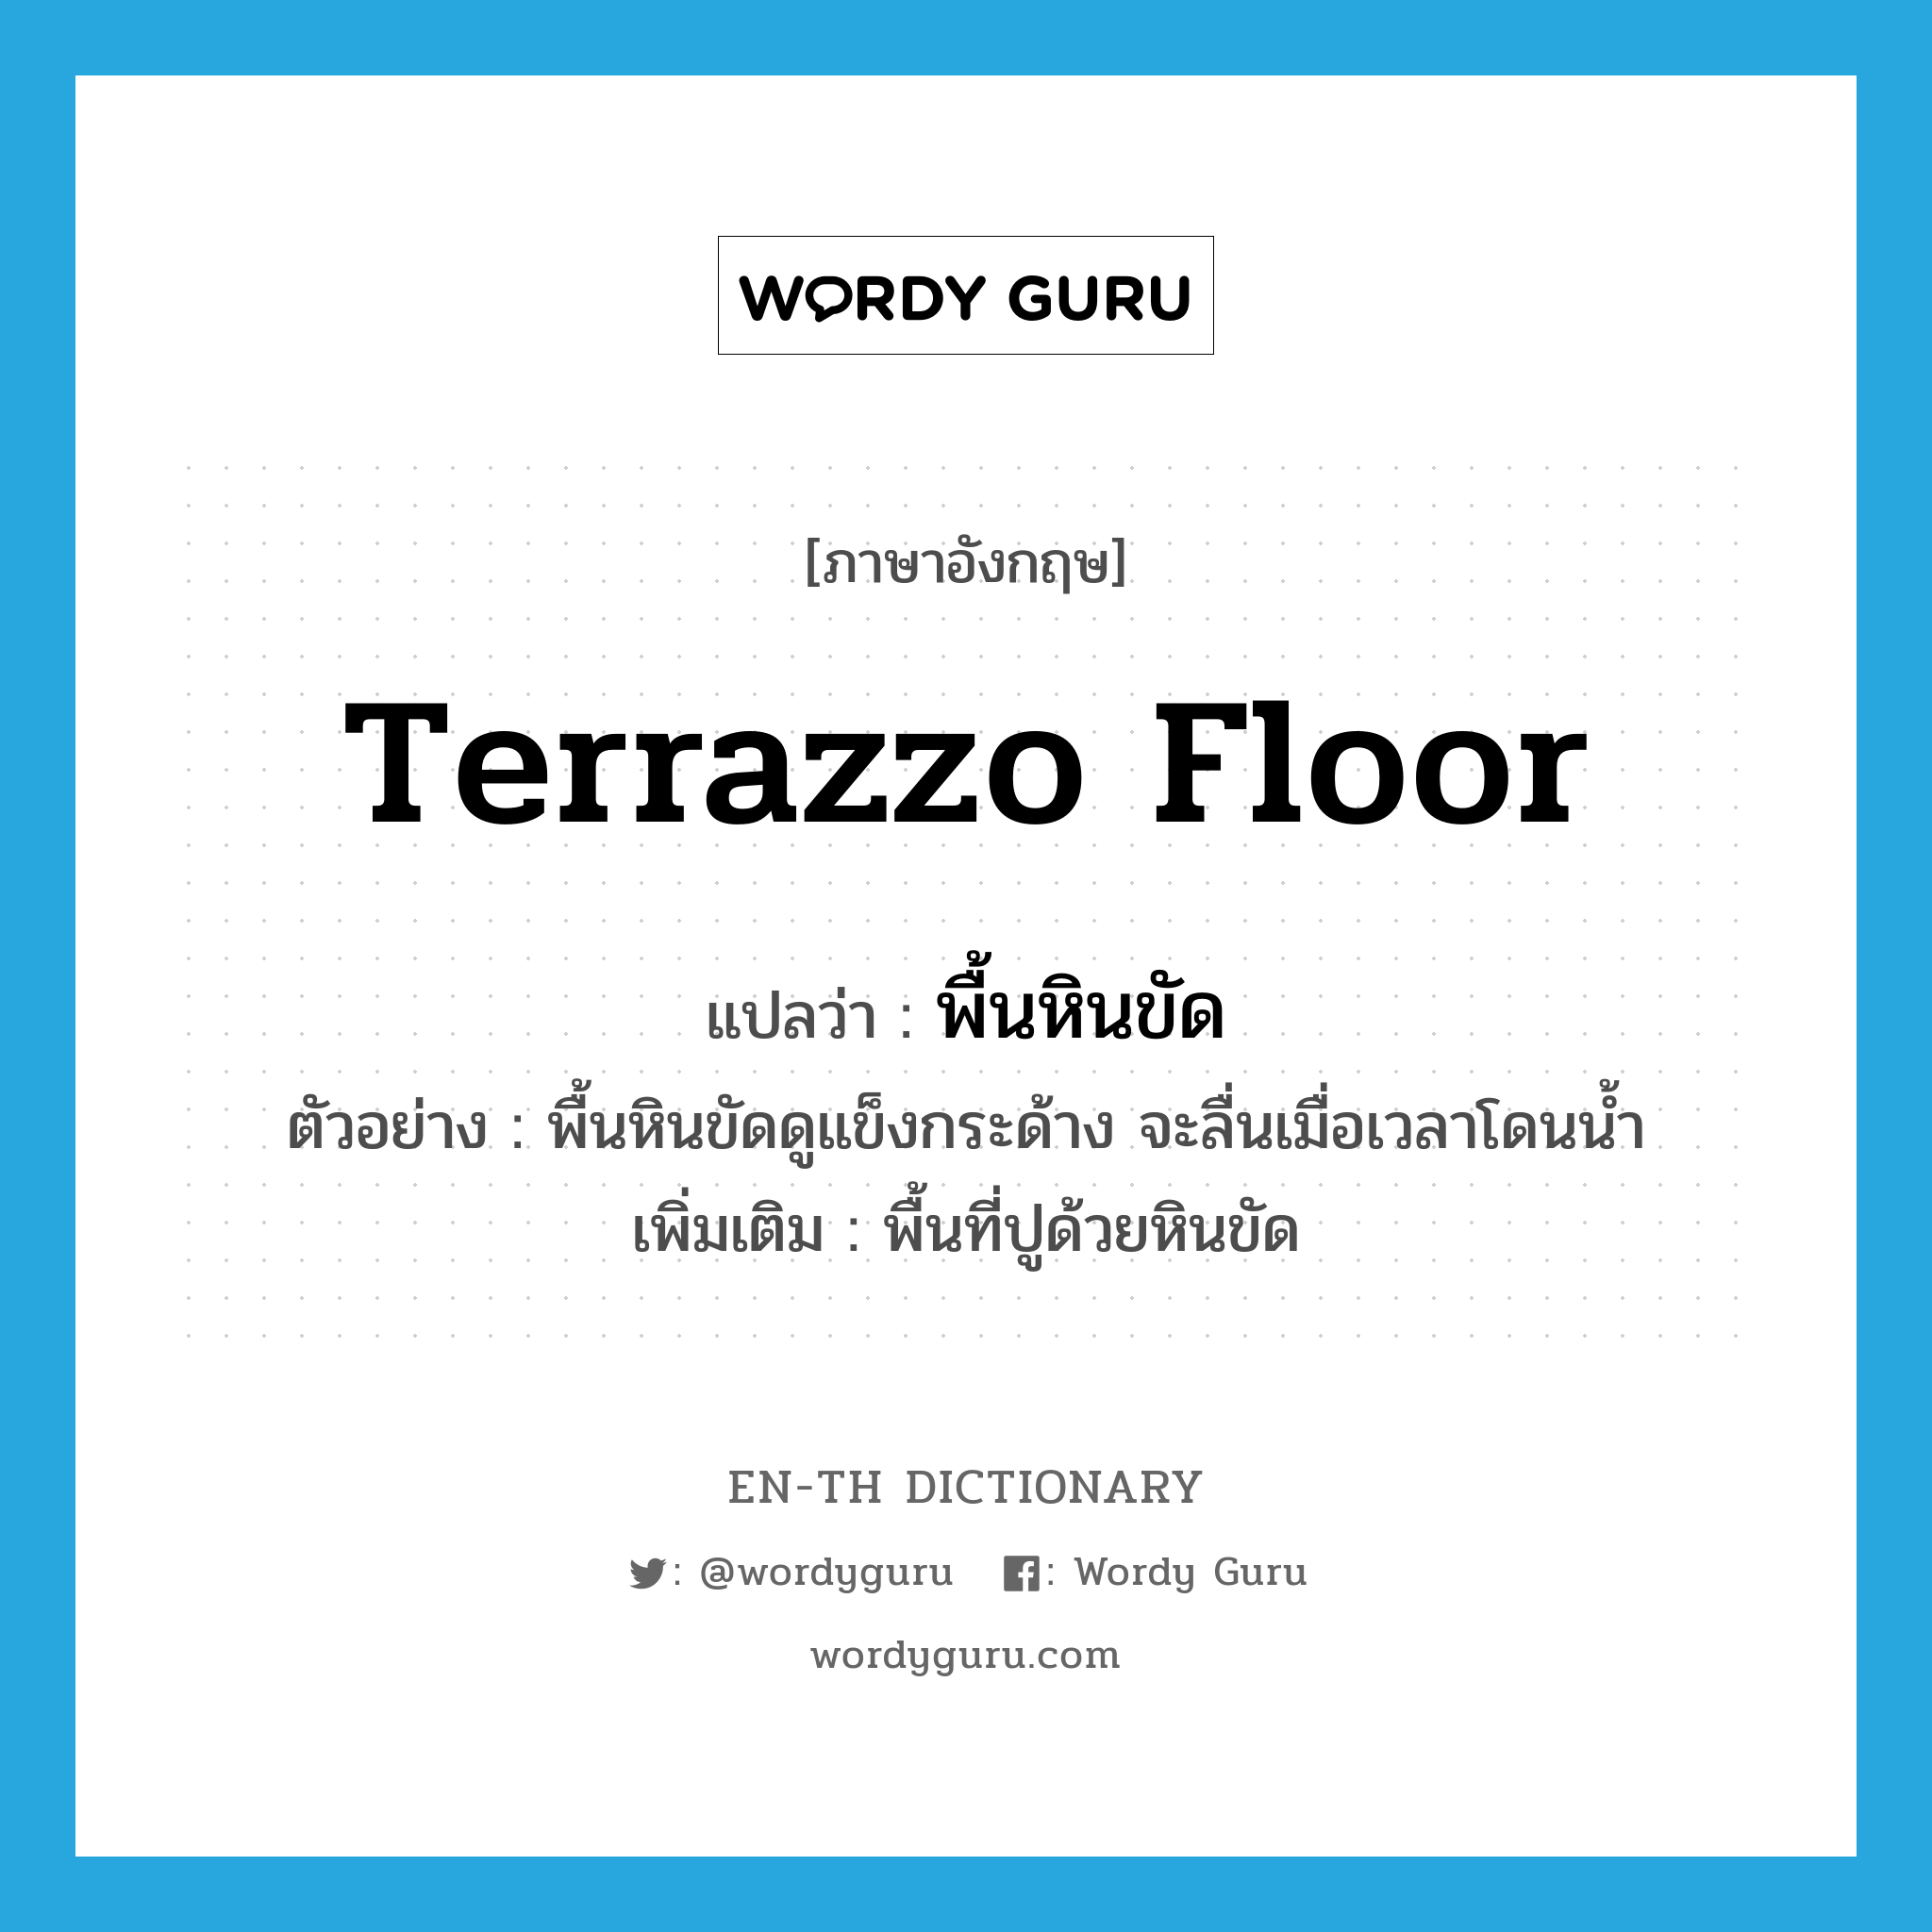 terrazzo floor แปลว่า?, คำศัพท์ภาษาอังกฤษ terrazzo floor แปลว่า พื้นหินขัด ประเภท N ตัวอย่าง พื้นหินขัดดูแข็งกระด้าง จะลื่นเมื่อเวลาโดนน้ำ เพิ่มเติม พื้นที่ปูด้วยหินขัด หมวด N